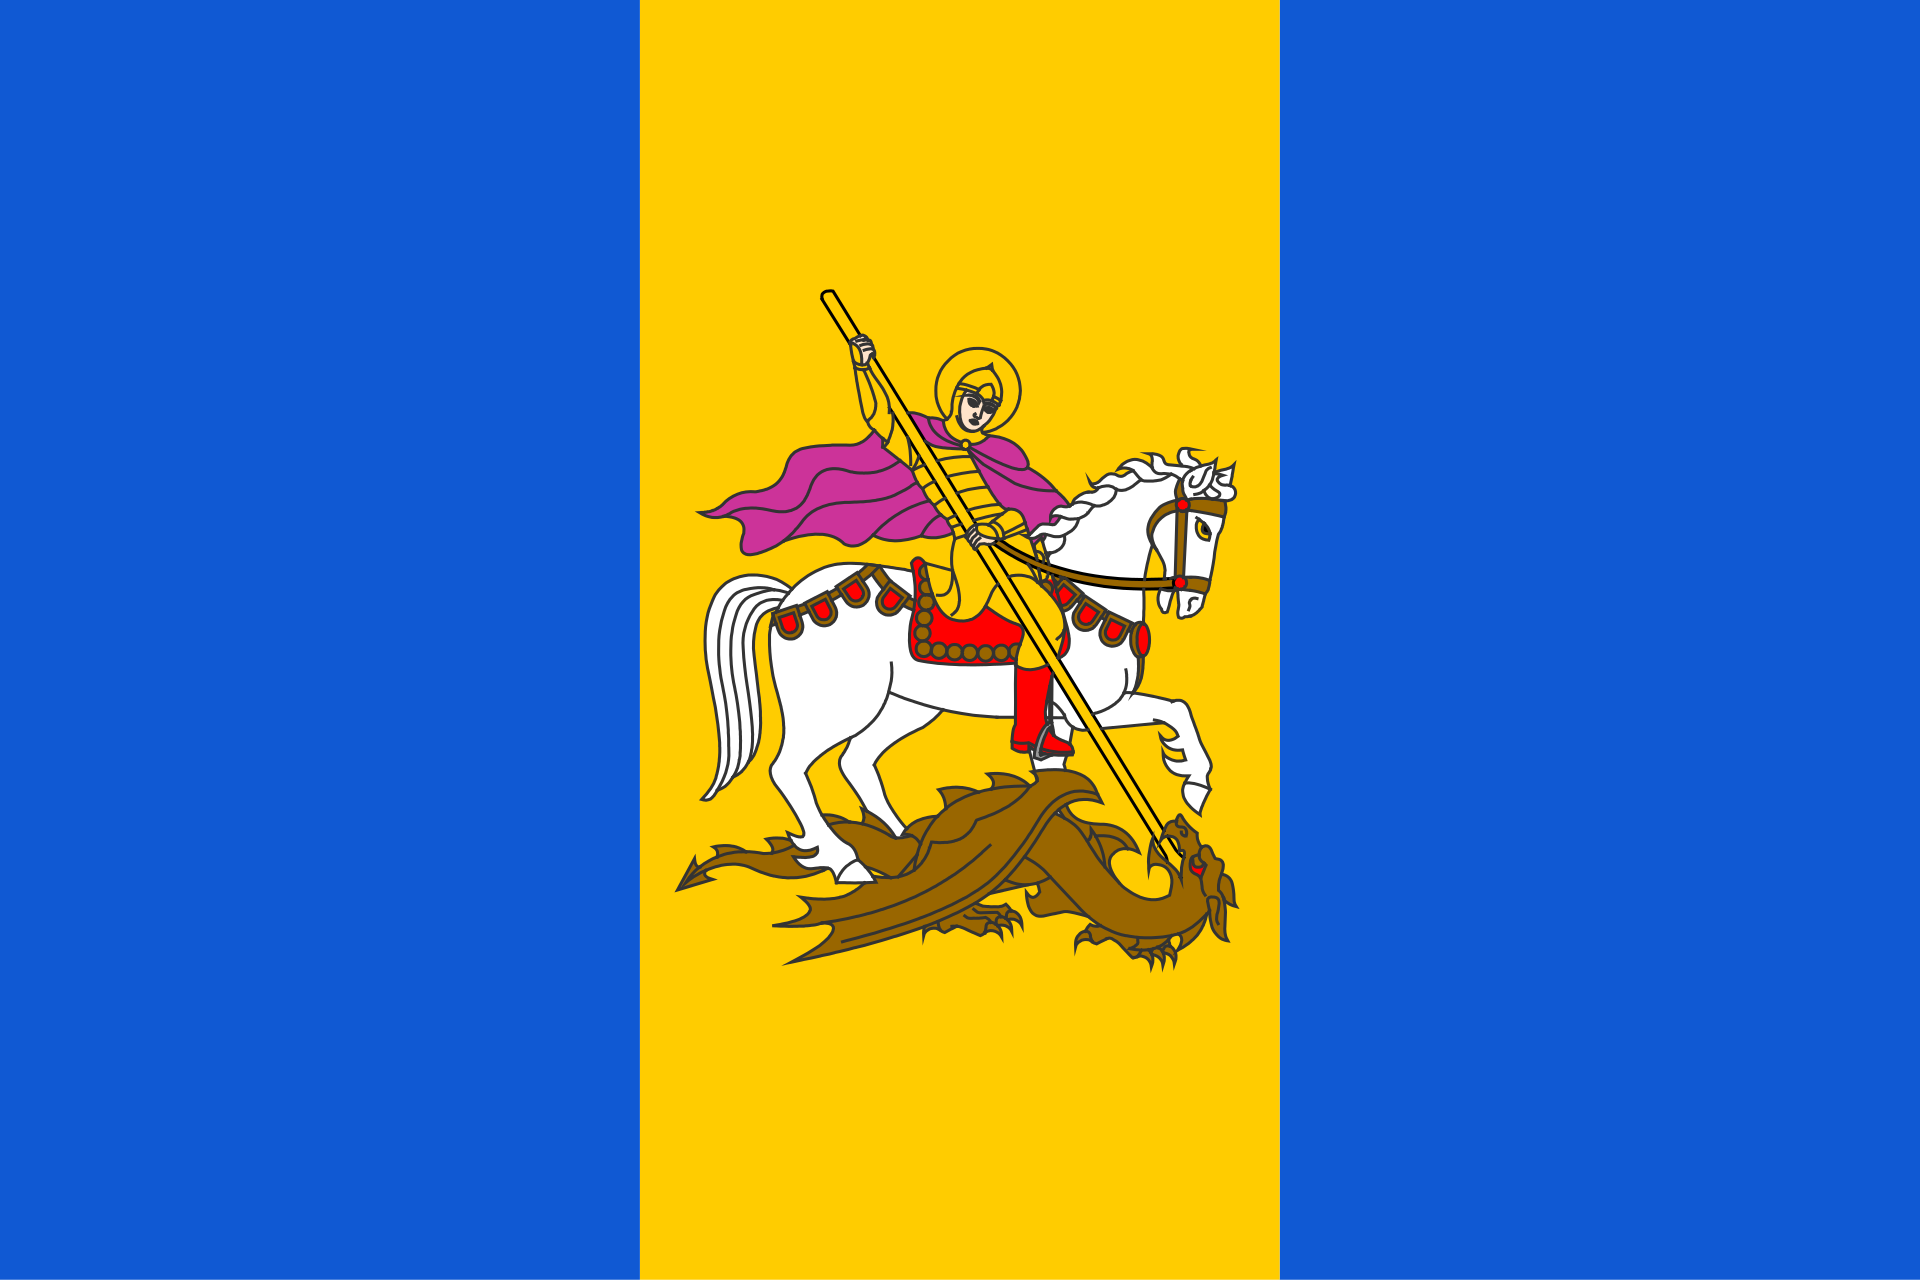 Прапор Київської області